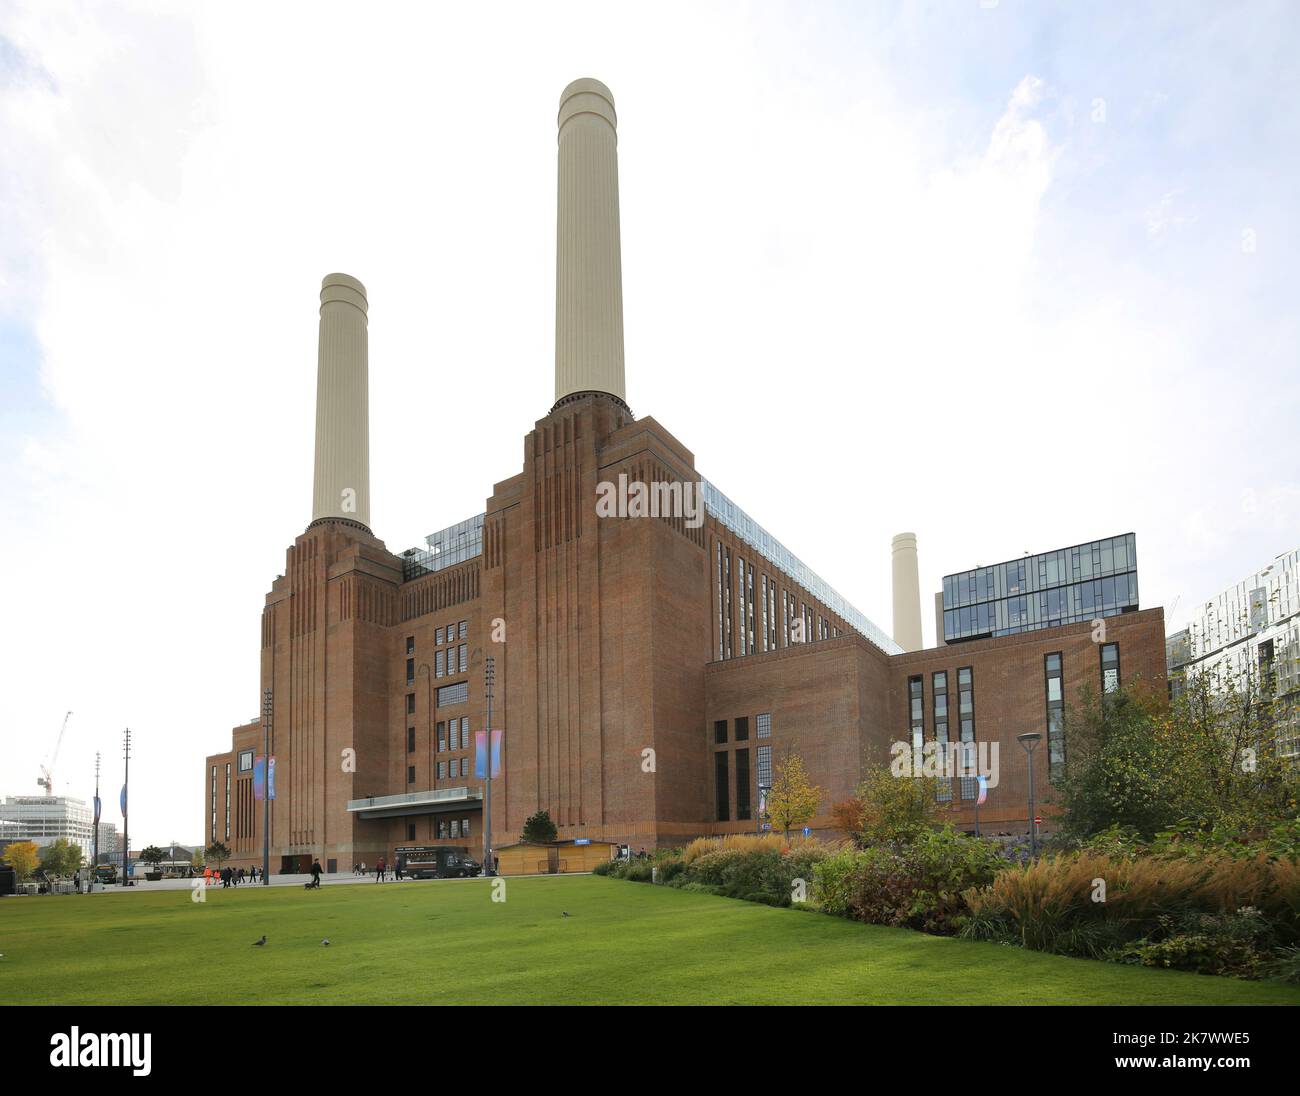 Außenansicht des neu eröffneten Battersea Power Station Reentwicklungsbereichs, London, Großbritannien. Eröffnet Im Oktober 2022. Zeigt den Park am Flussufer und den Eingang. Stockfoto